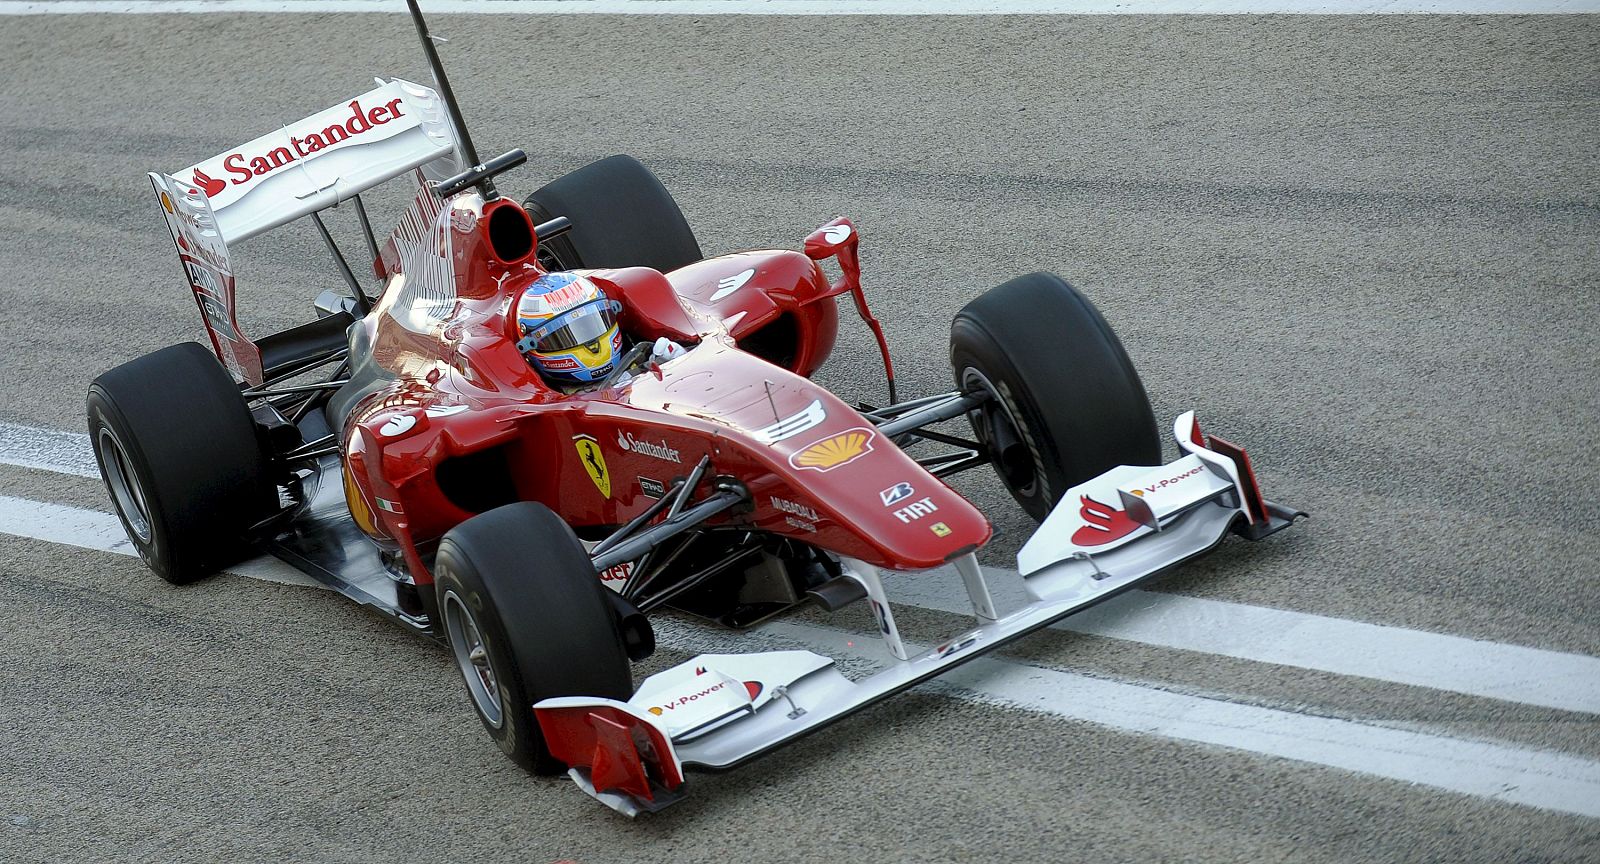 El piloto de Ferrari, Fernando Alonso, al volante del F10 durante los entrenamientos llevados a cabo por varias escuderías de Formula 1 en el circuito Ricardo Tormo de Cheste, Valencia.